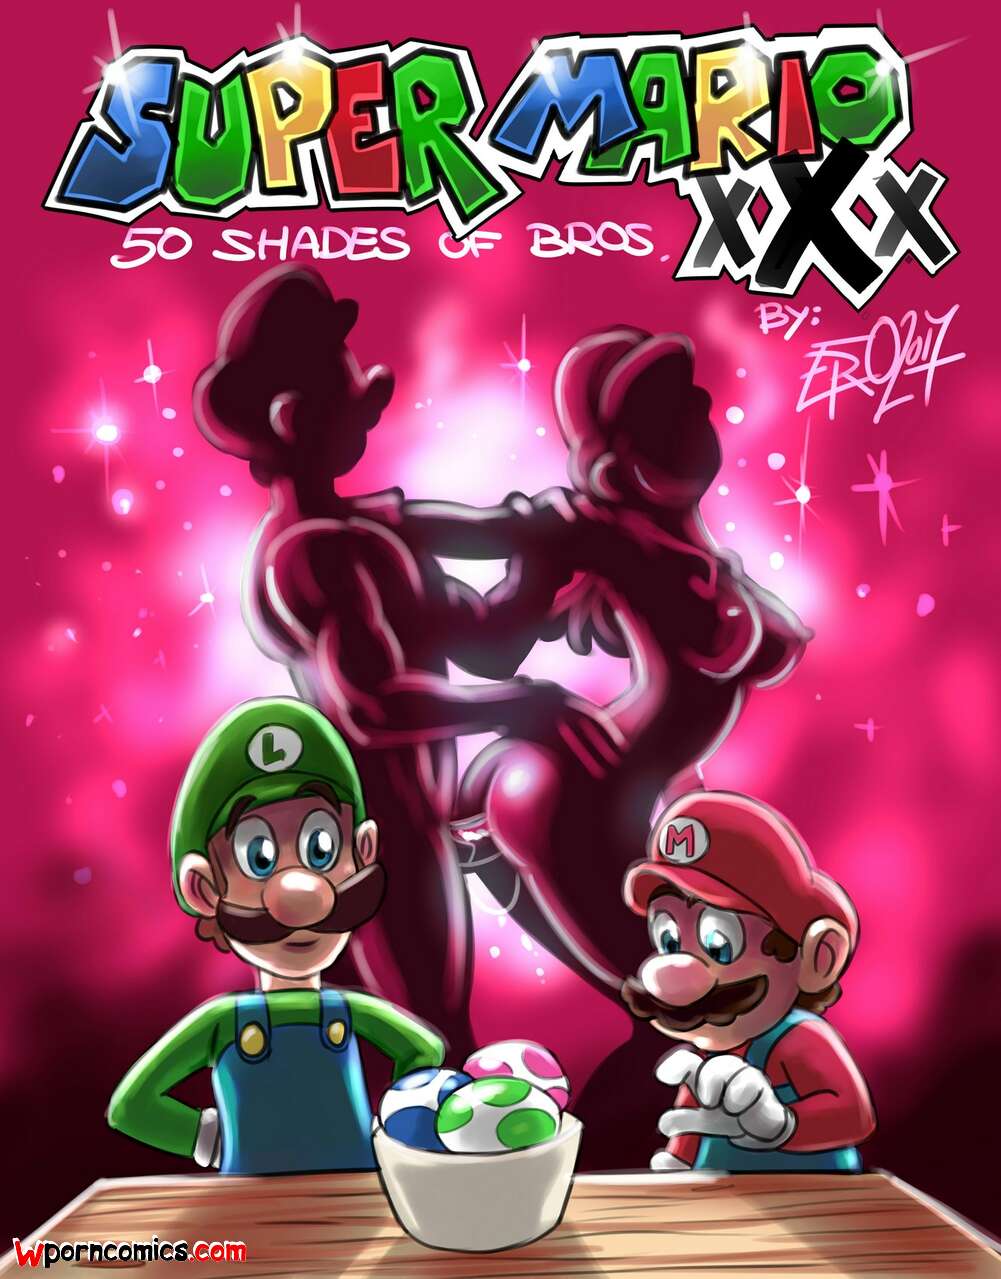 1001px x 1279px - âœ…ï¸ Porn comic Super Mario xXx. 50 Shades of Bros. Psicoero. Sex comic of  the brothers | Porn comics in English for adults only | sexkomix2.com